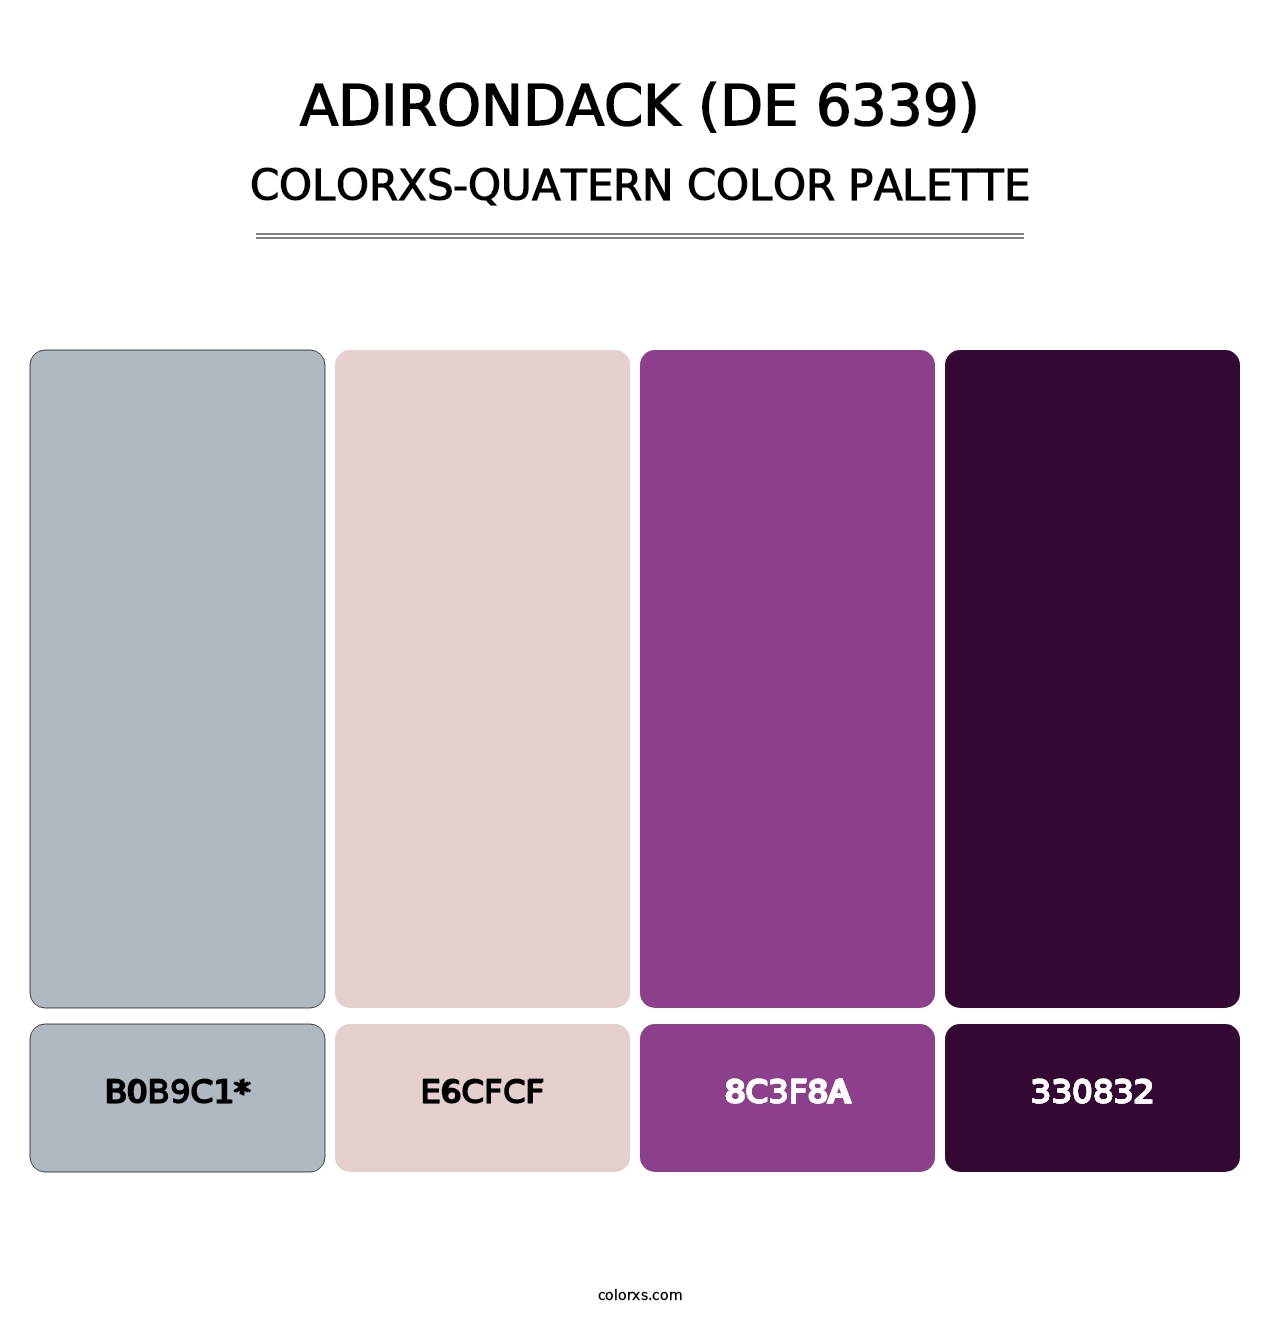 Adirondack (DE 6339) - Colorxs Quatern Palette